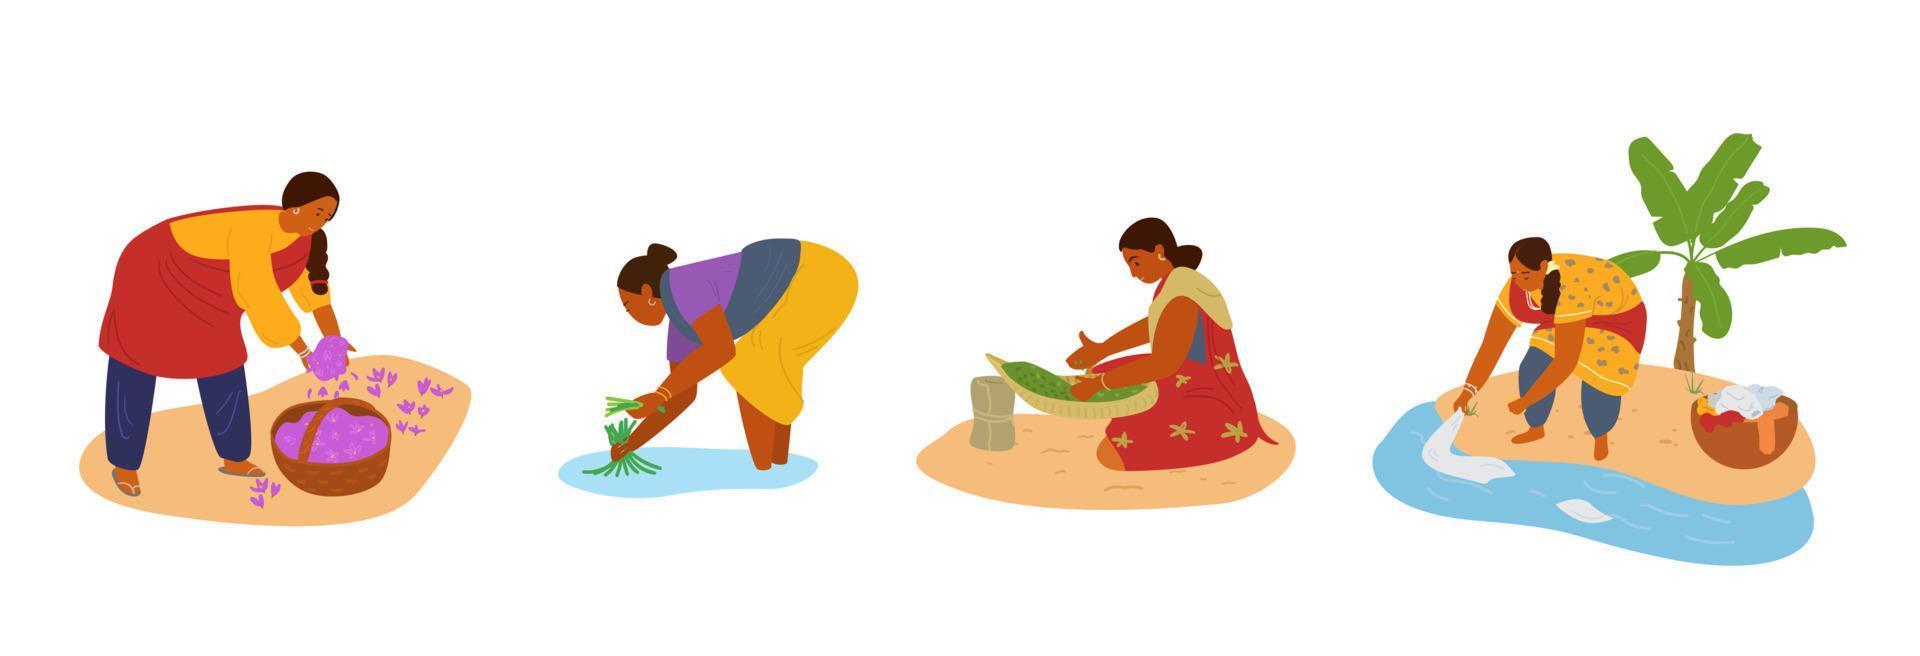 conjunto de vetores de mulheres indianas trabalhando. coletando açafrão, trabalhando no campo de arroz, selecionando ervas, lavando as mãos. trabalho manual.